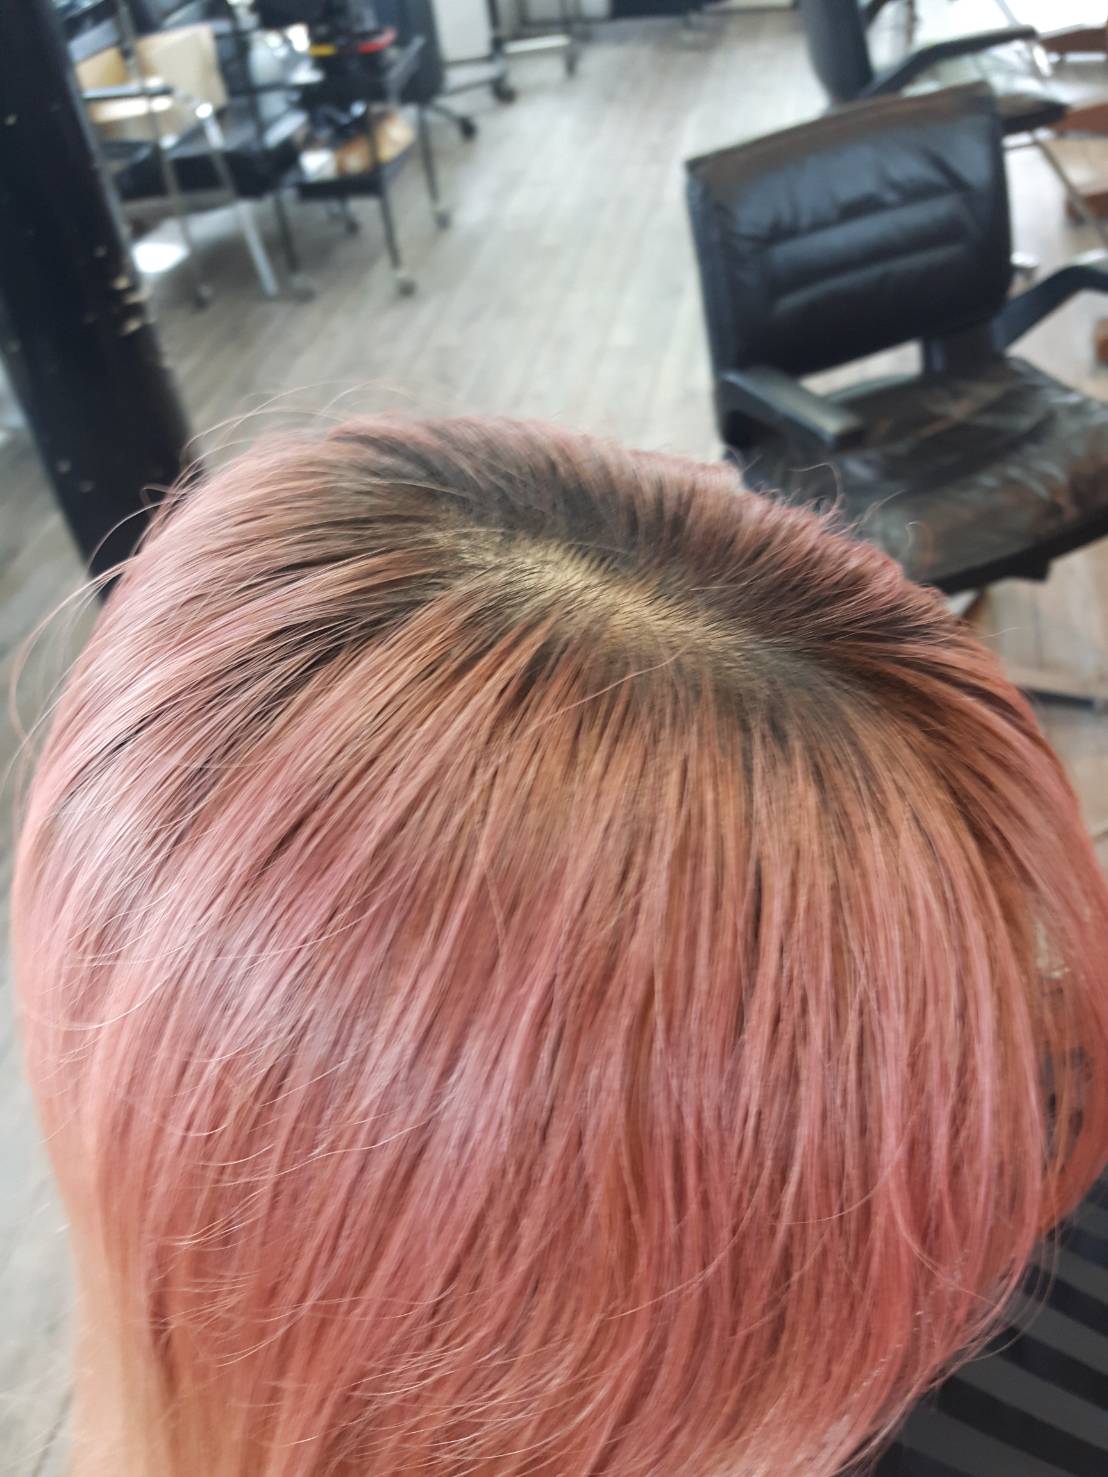 18歳 ピンク髪 汚く残ったカラー すぐに消したい時は 奈良斑鳩町の美容室 髪 ブログ